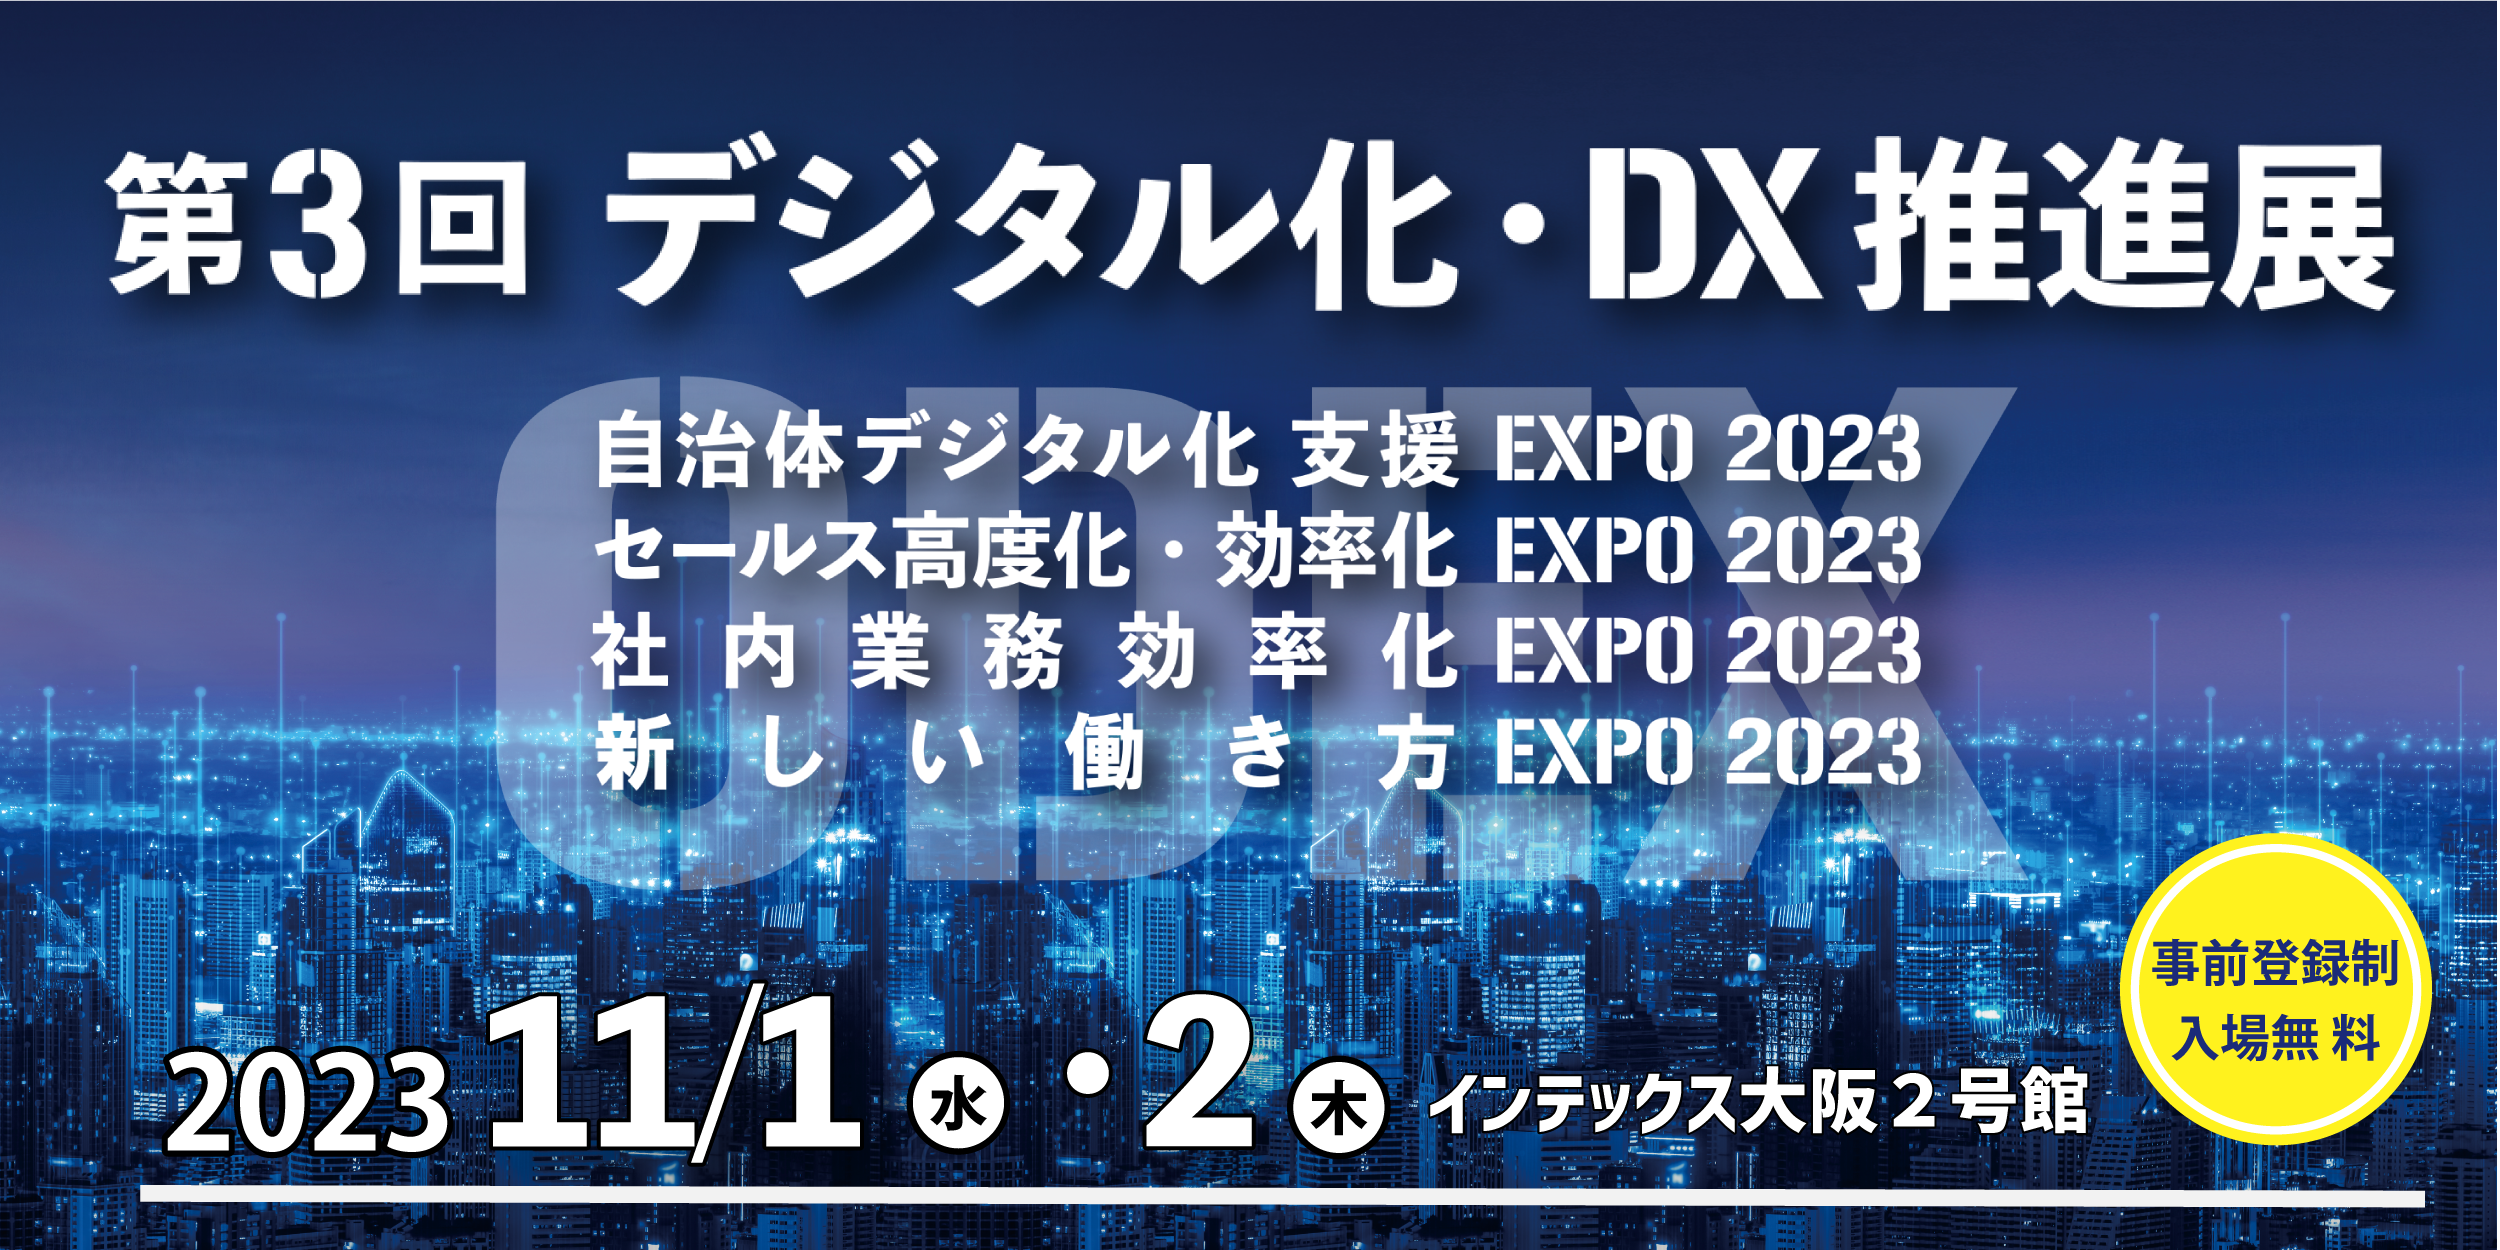 バーチャレクス、第3回デジタル化・DX推進展 大阪 に出展